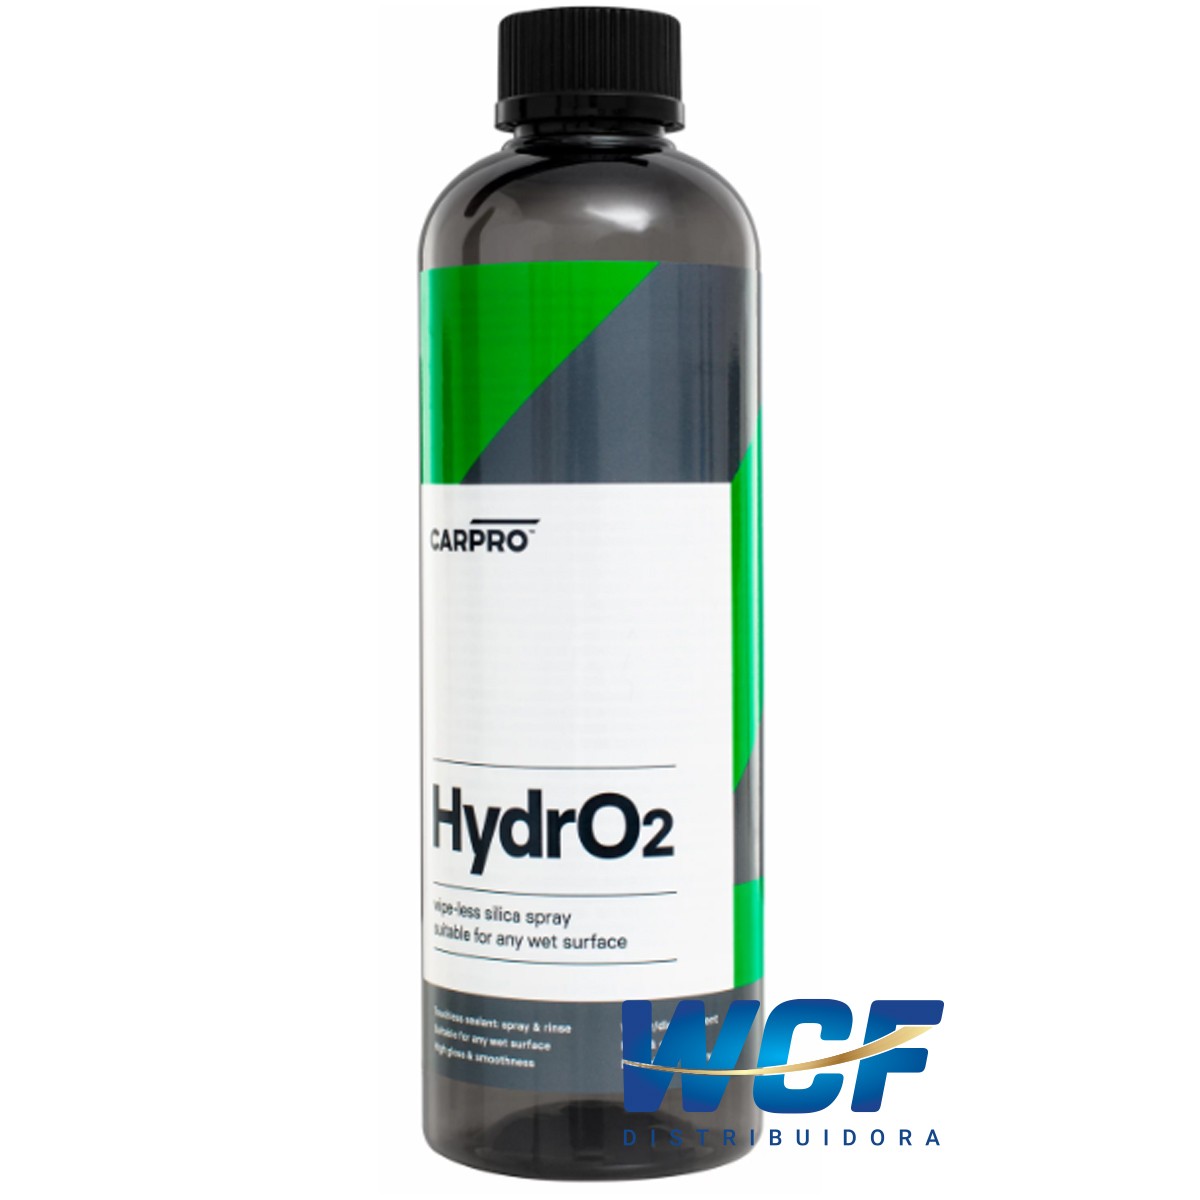 CARPRO HYDROO2 SELANTE CONCENTRADO 500 ML